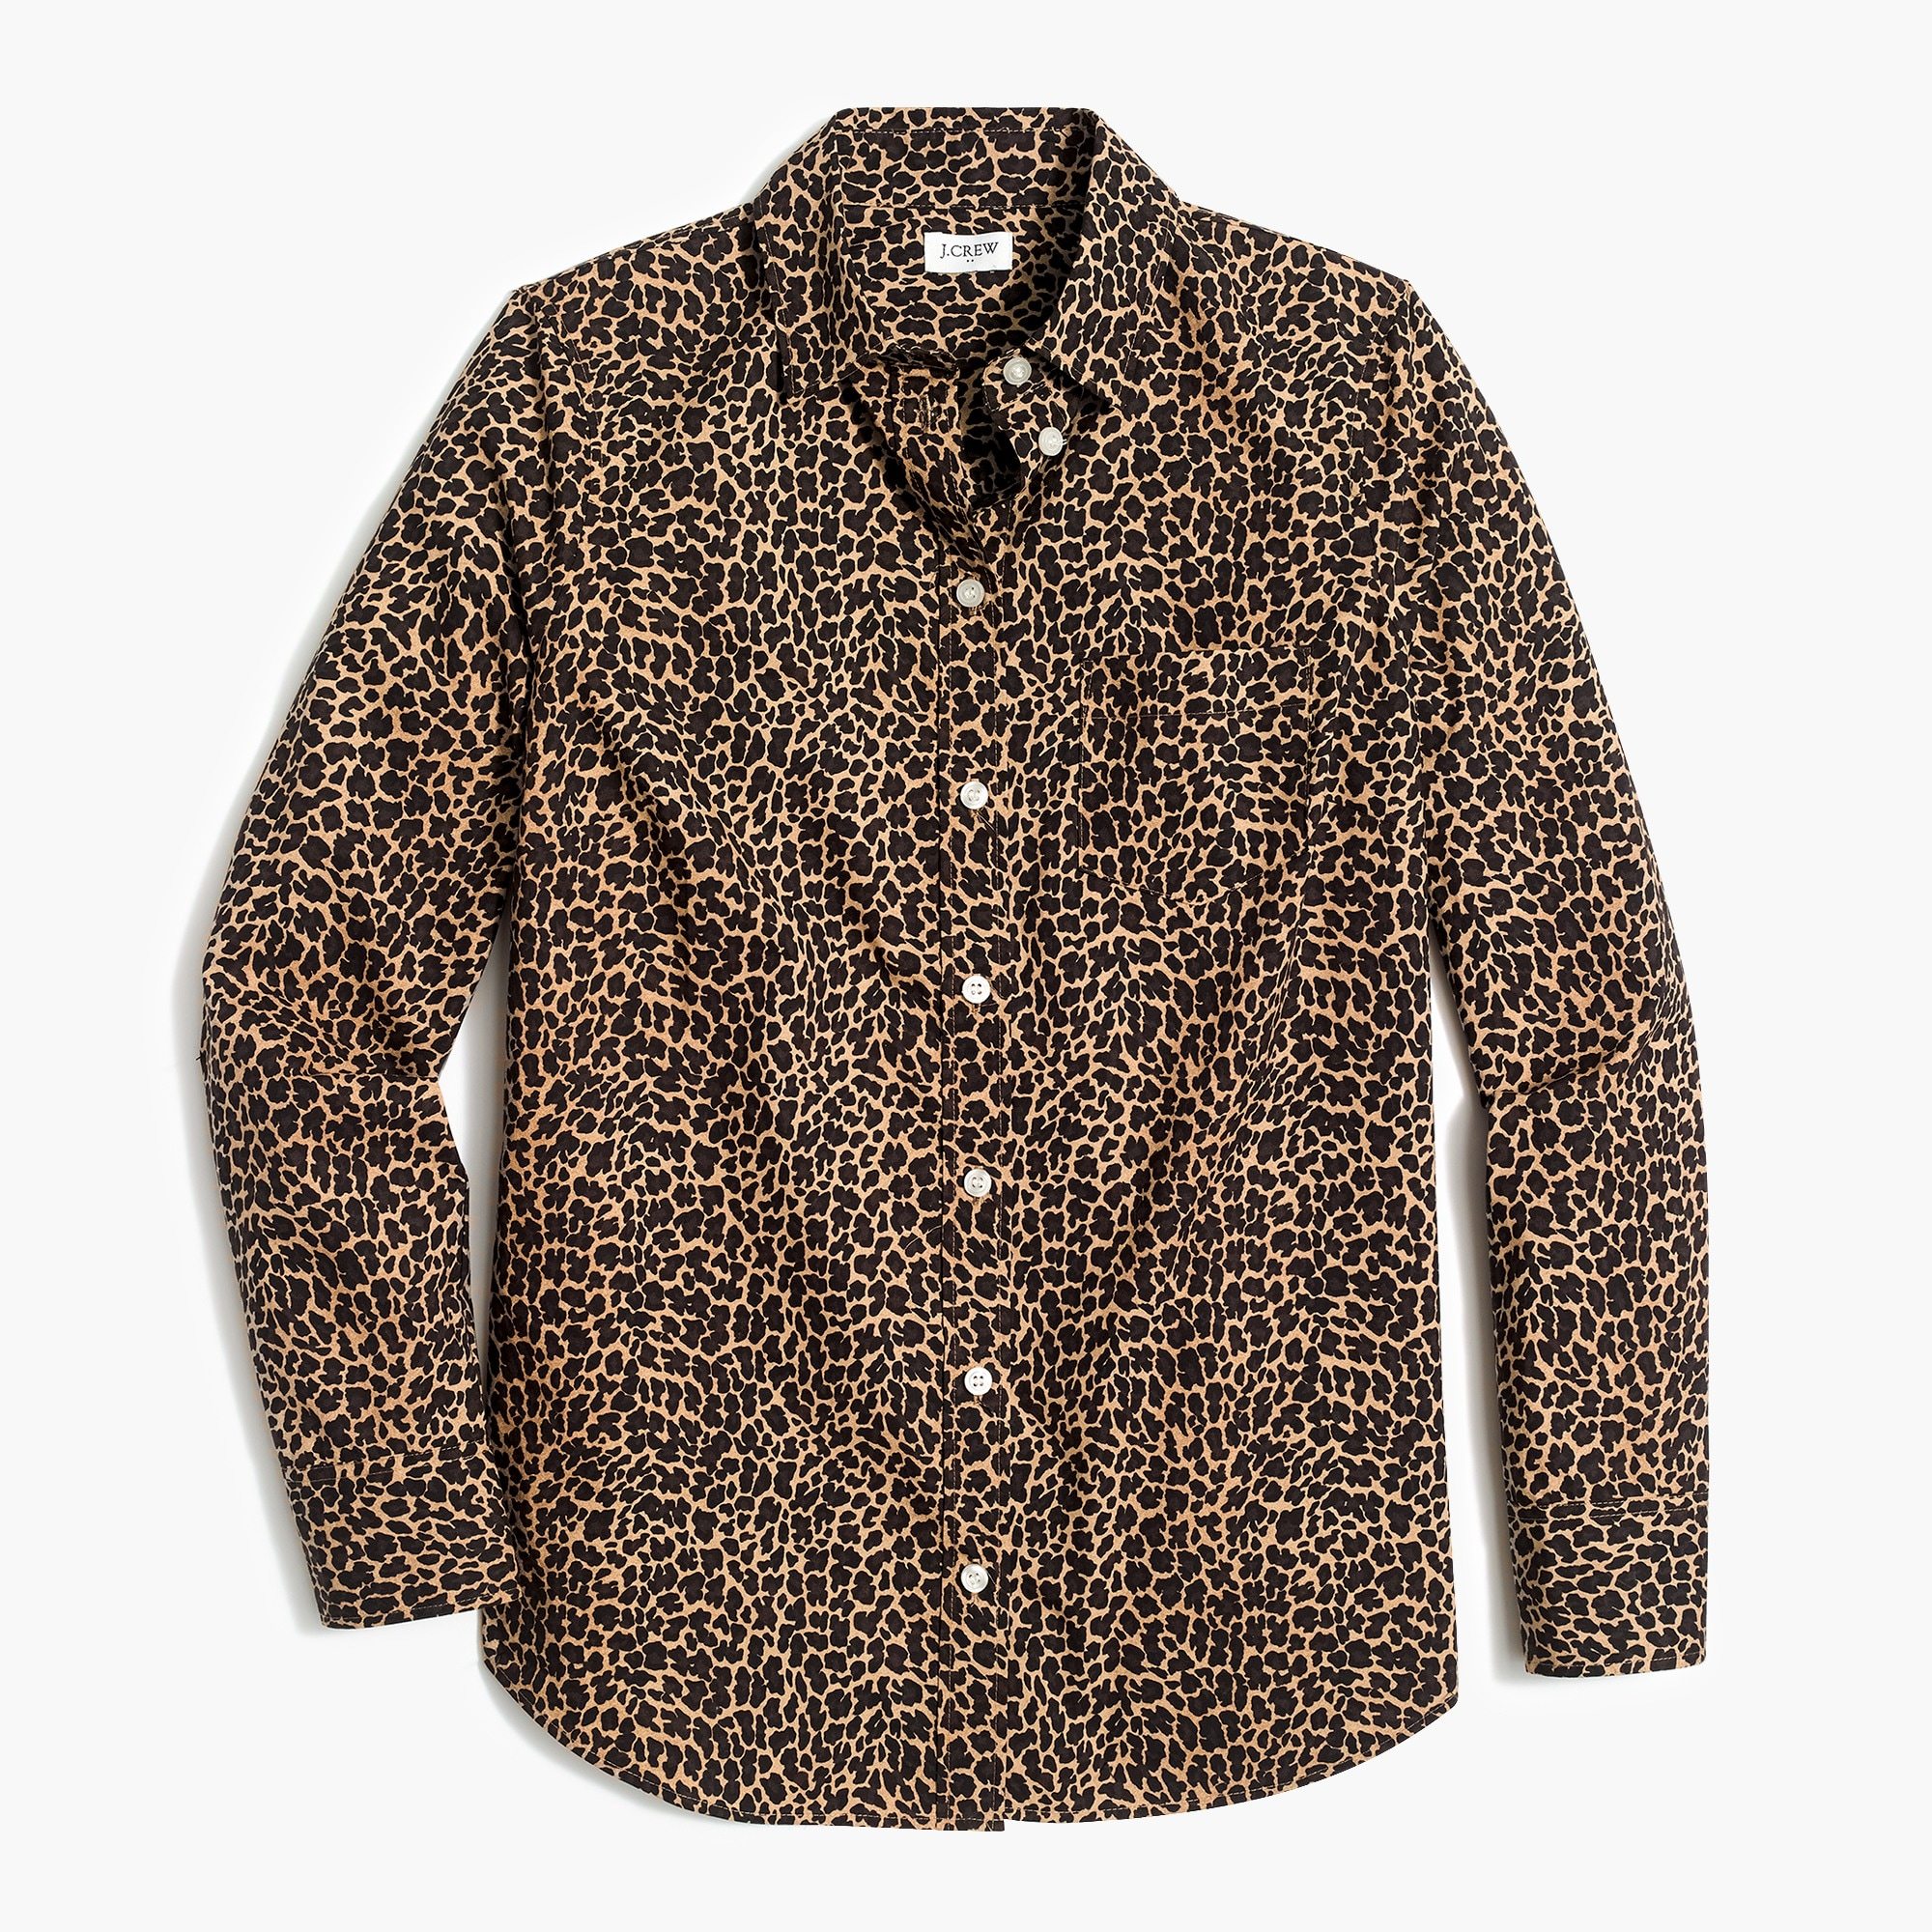 Button-up leopard shirt